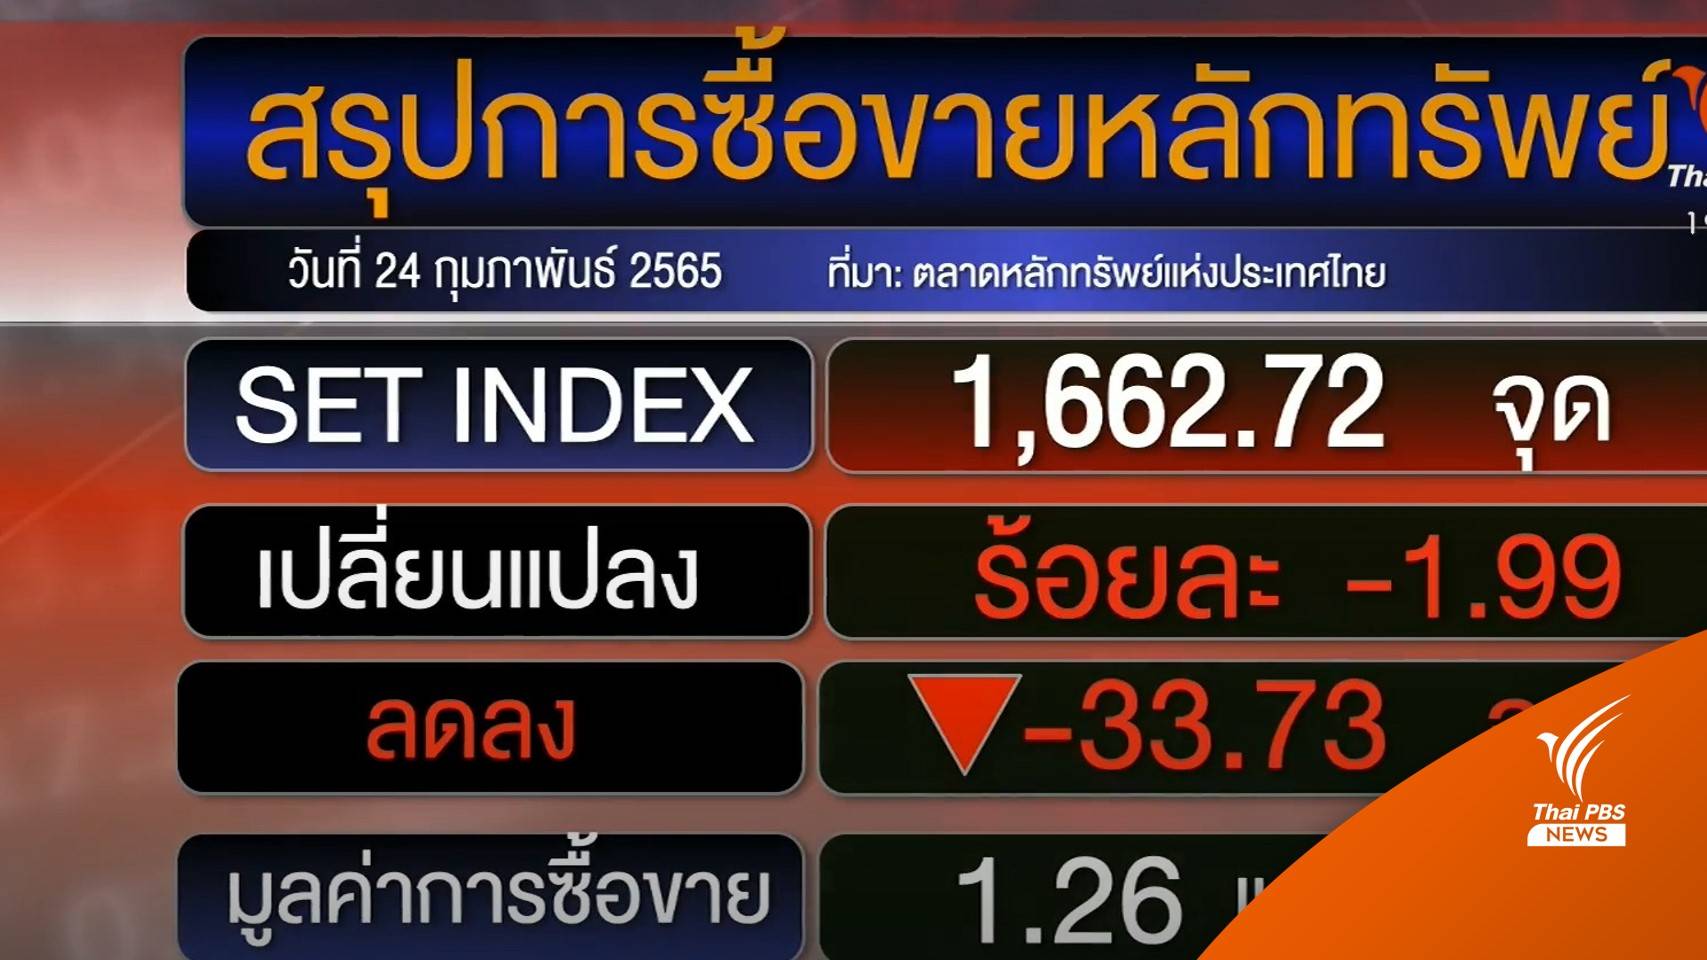 หุ้นไทยร่วง-ทองราคาพุ่ง หวั่นสงครามคาดกระทบ 1 แสนล้าน